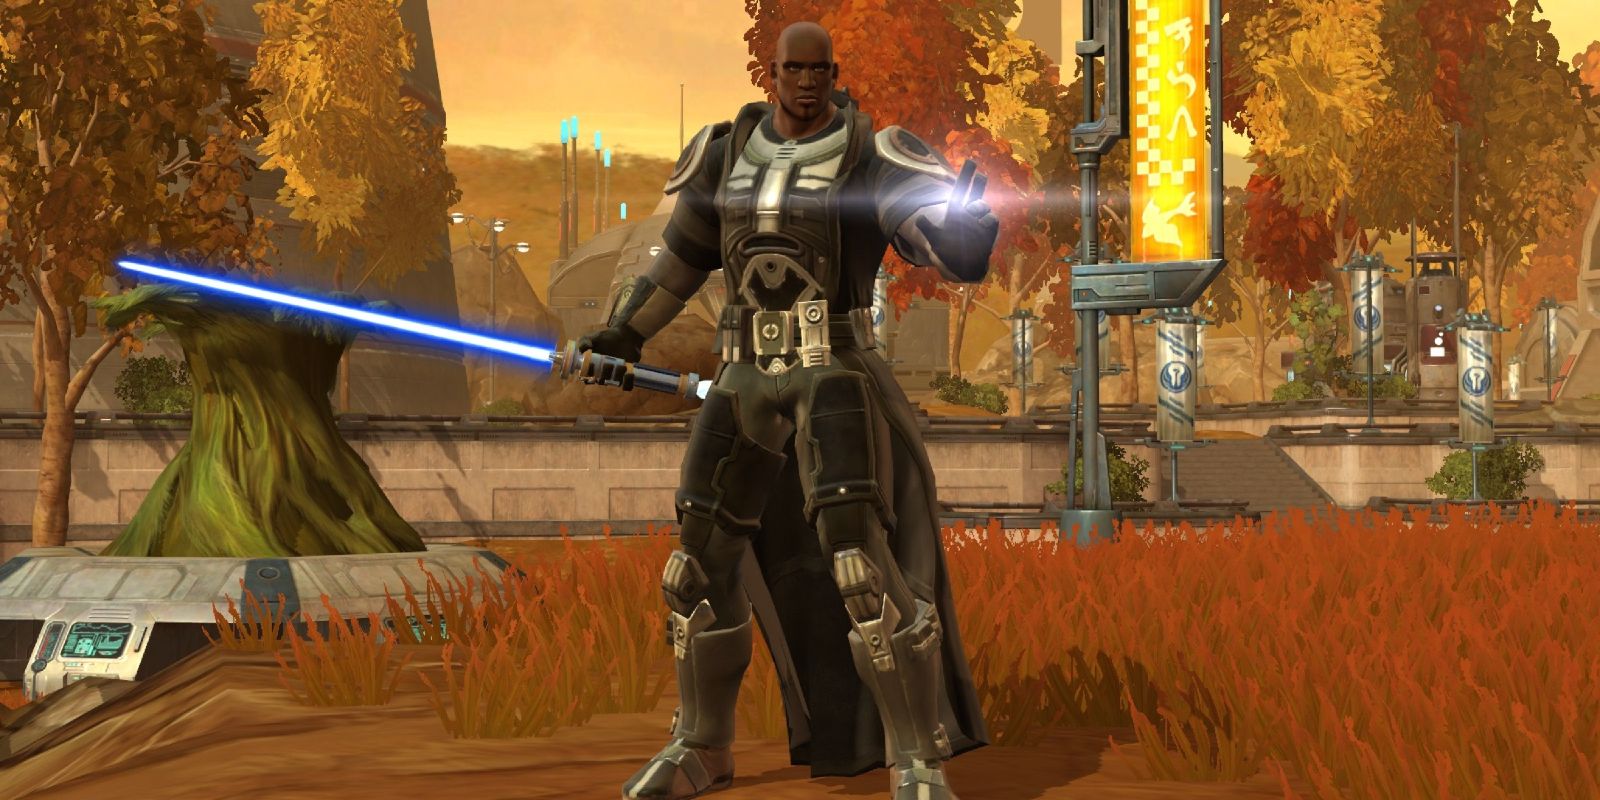 Star Wars The Old Republic Jedi Knight